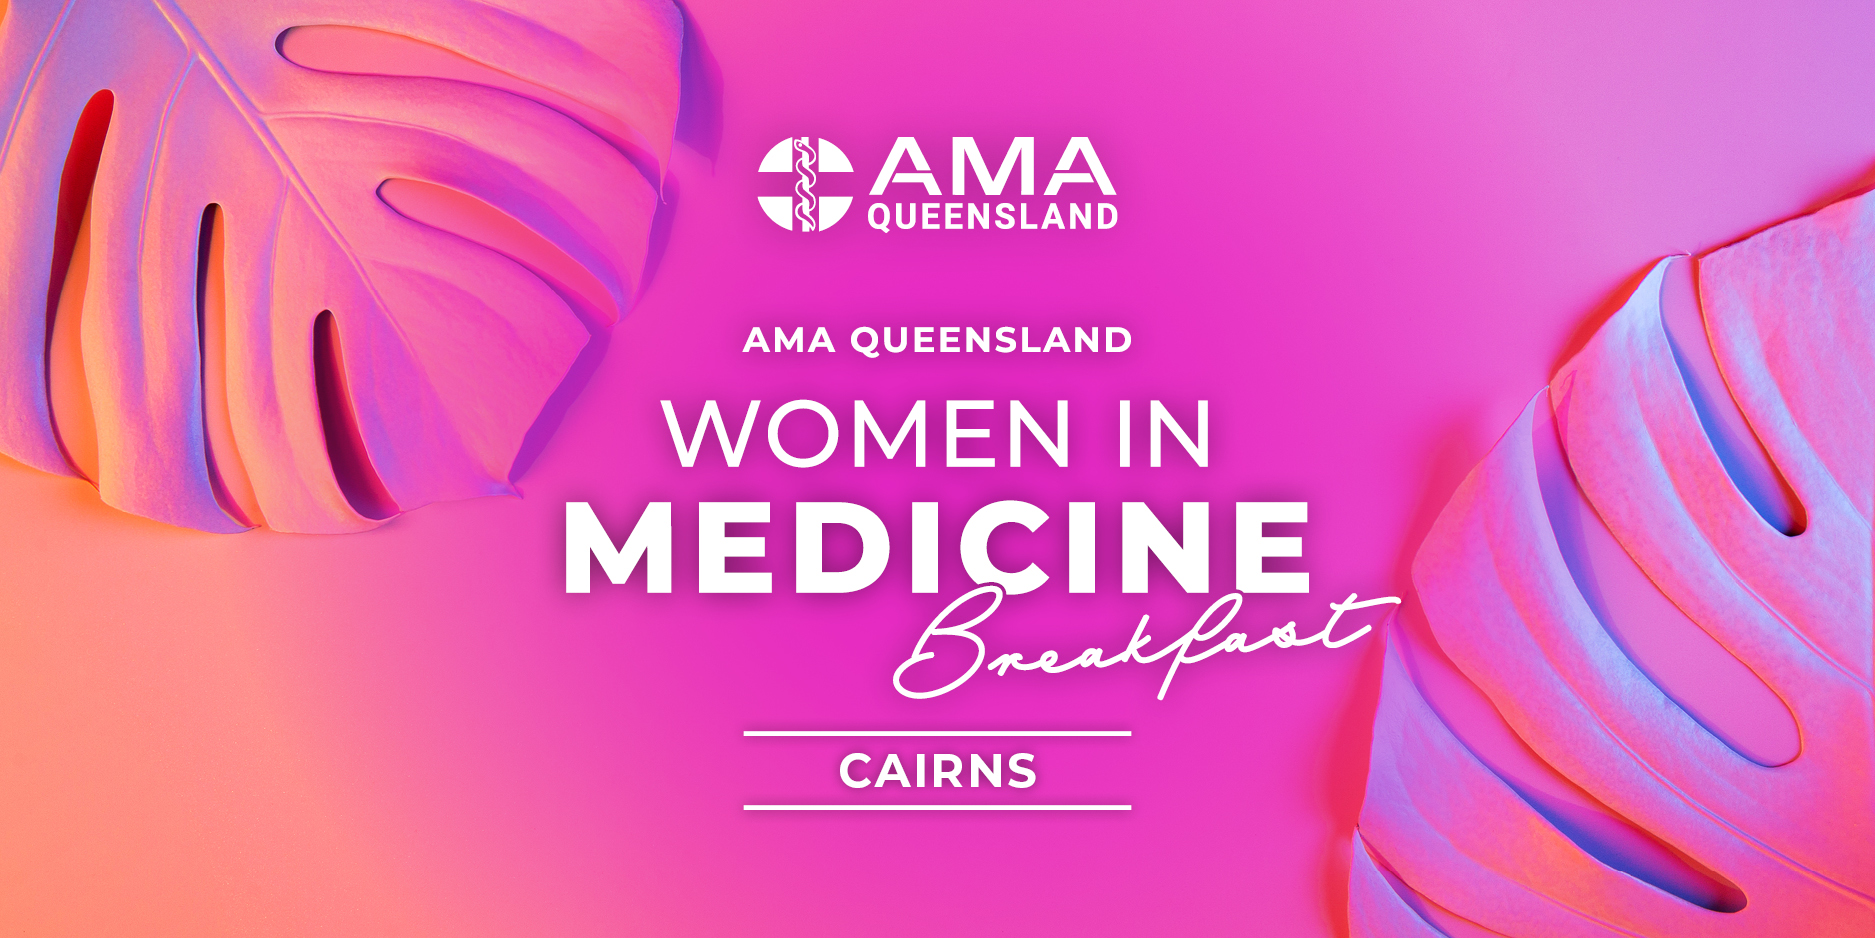 Women in Medicine Breakfast - Cairns